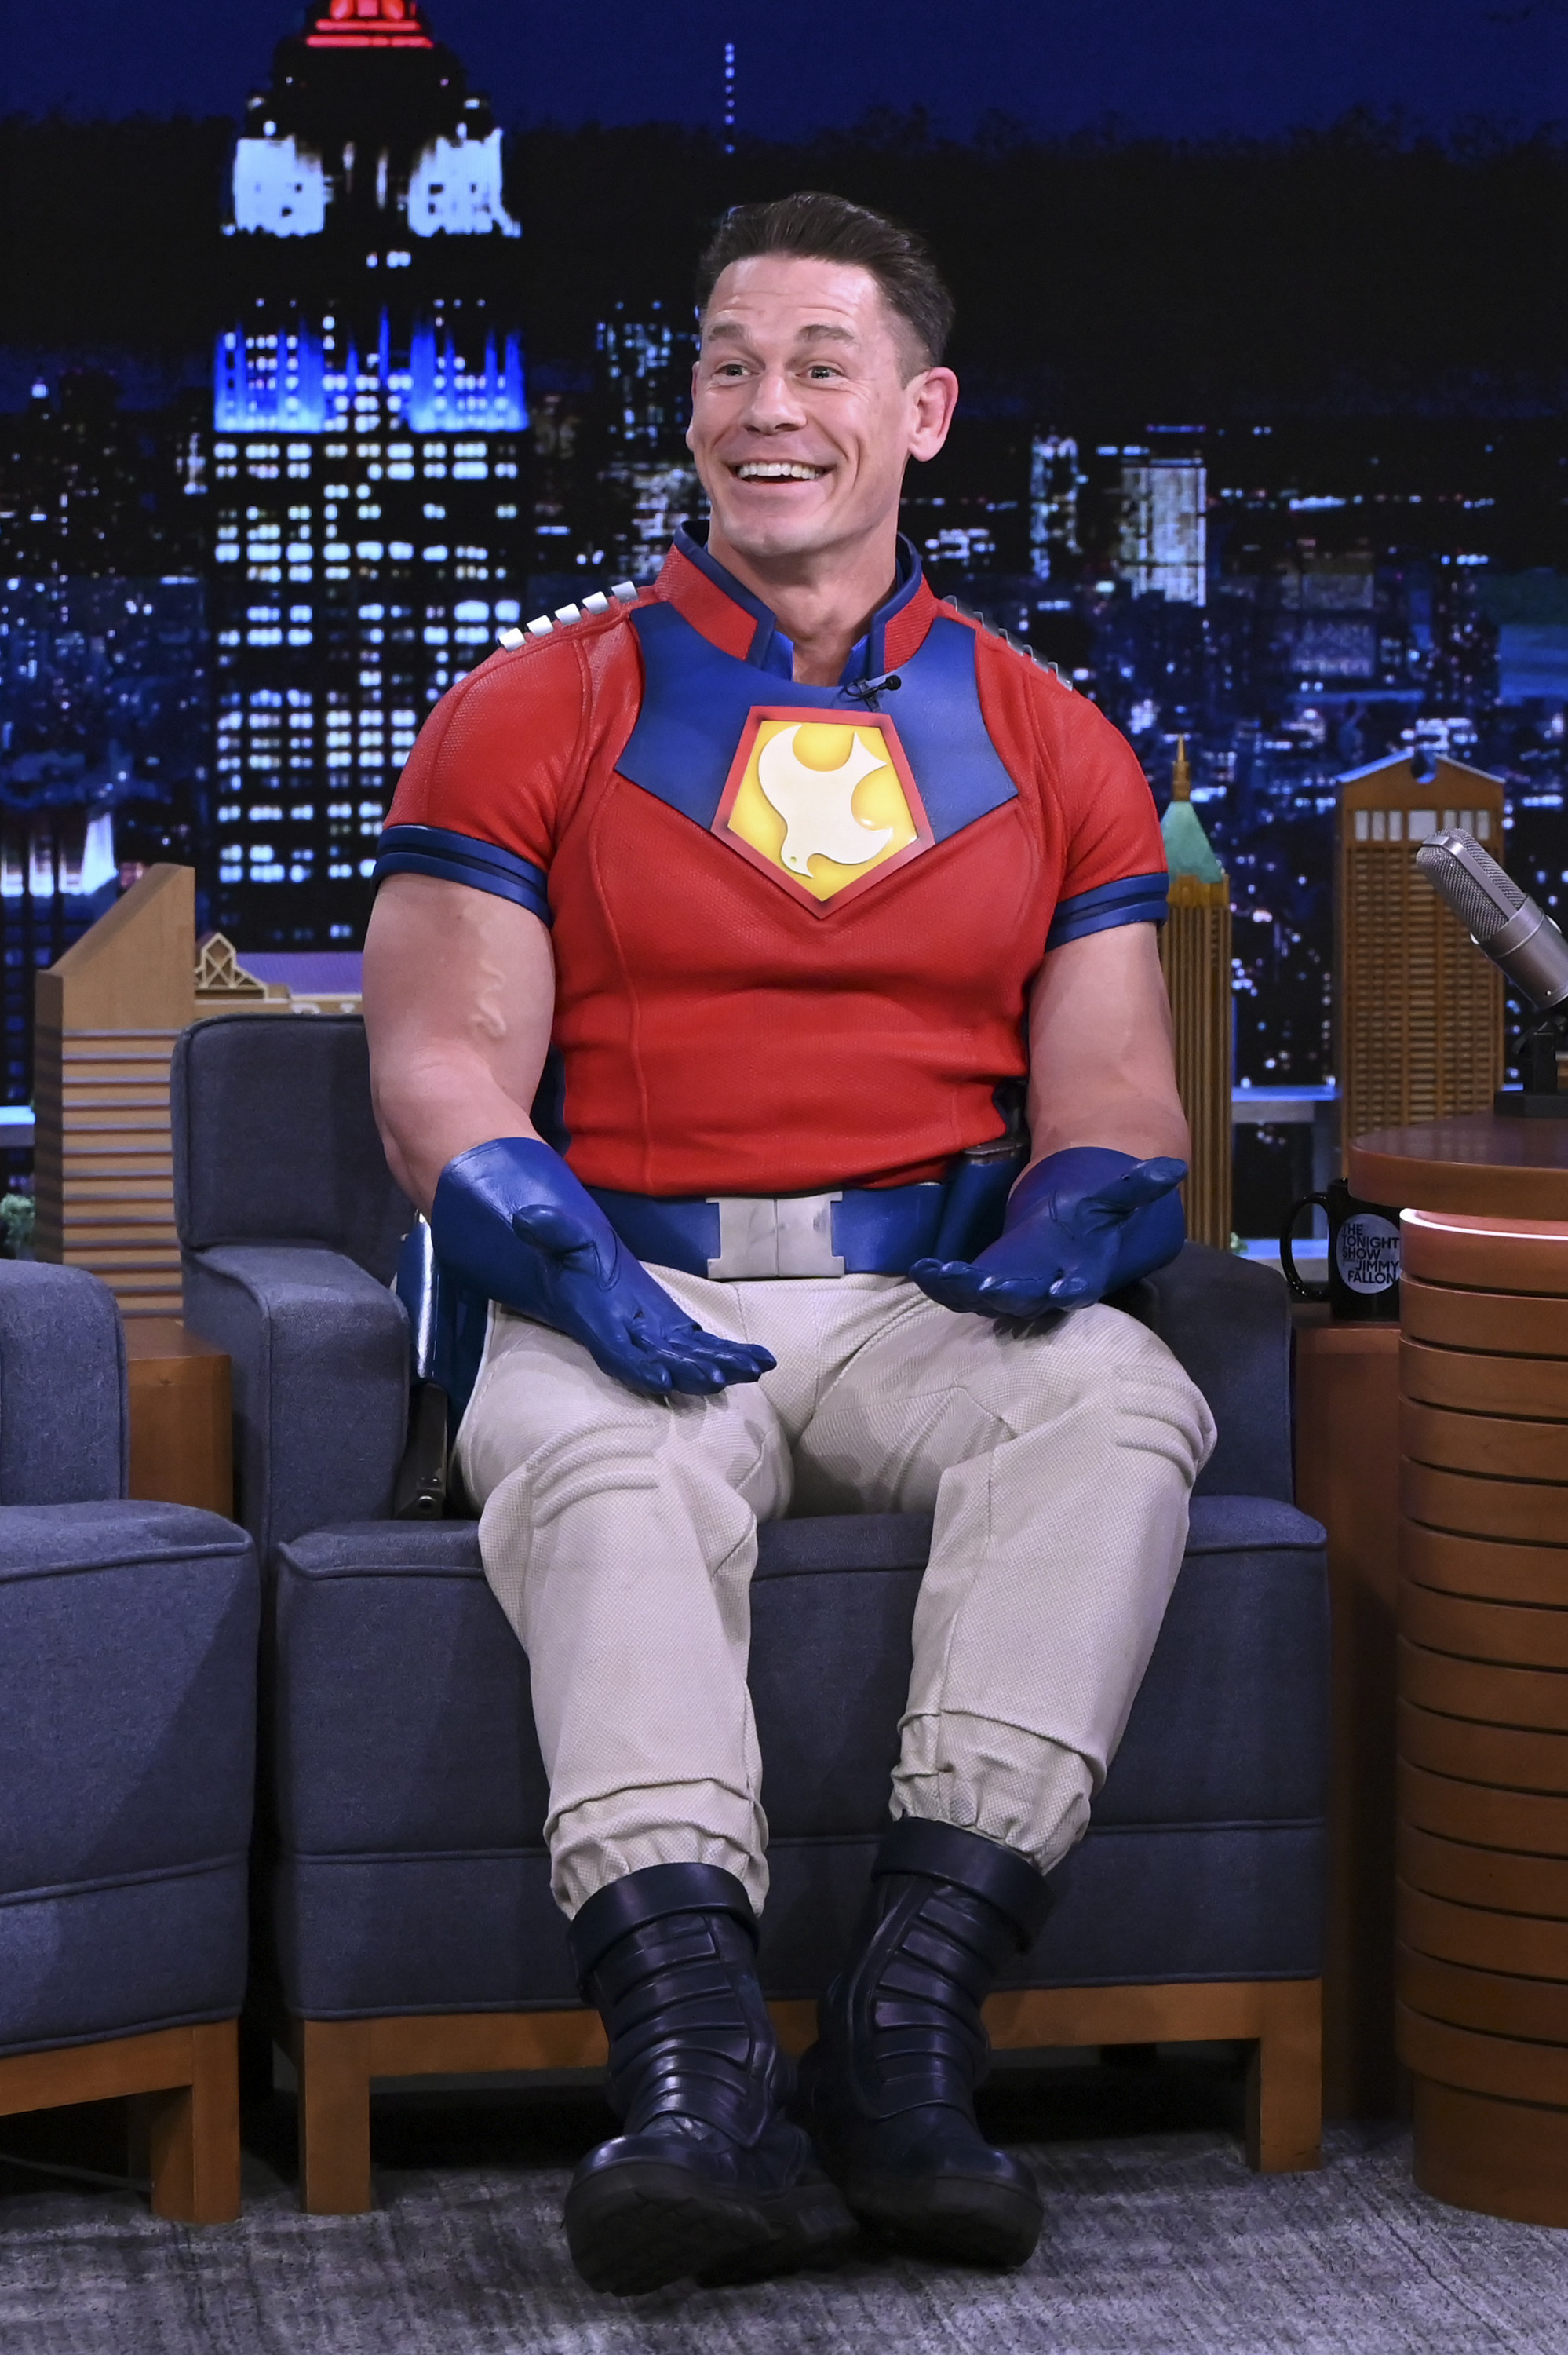 john on fallon in a superman shirt